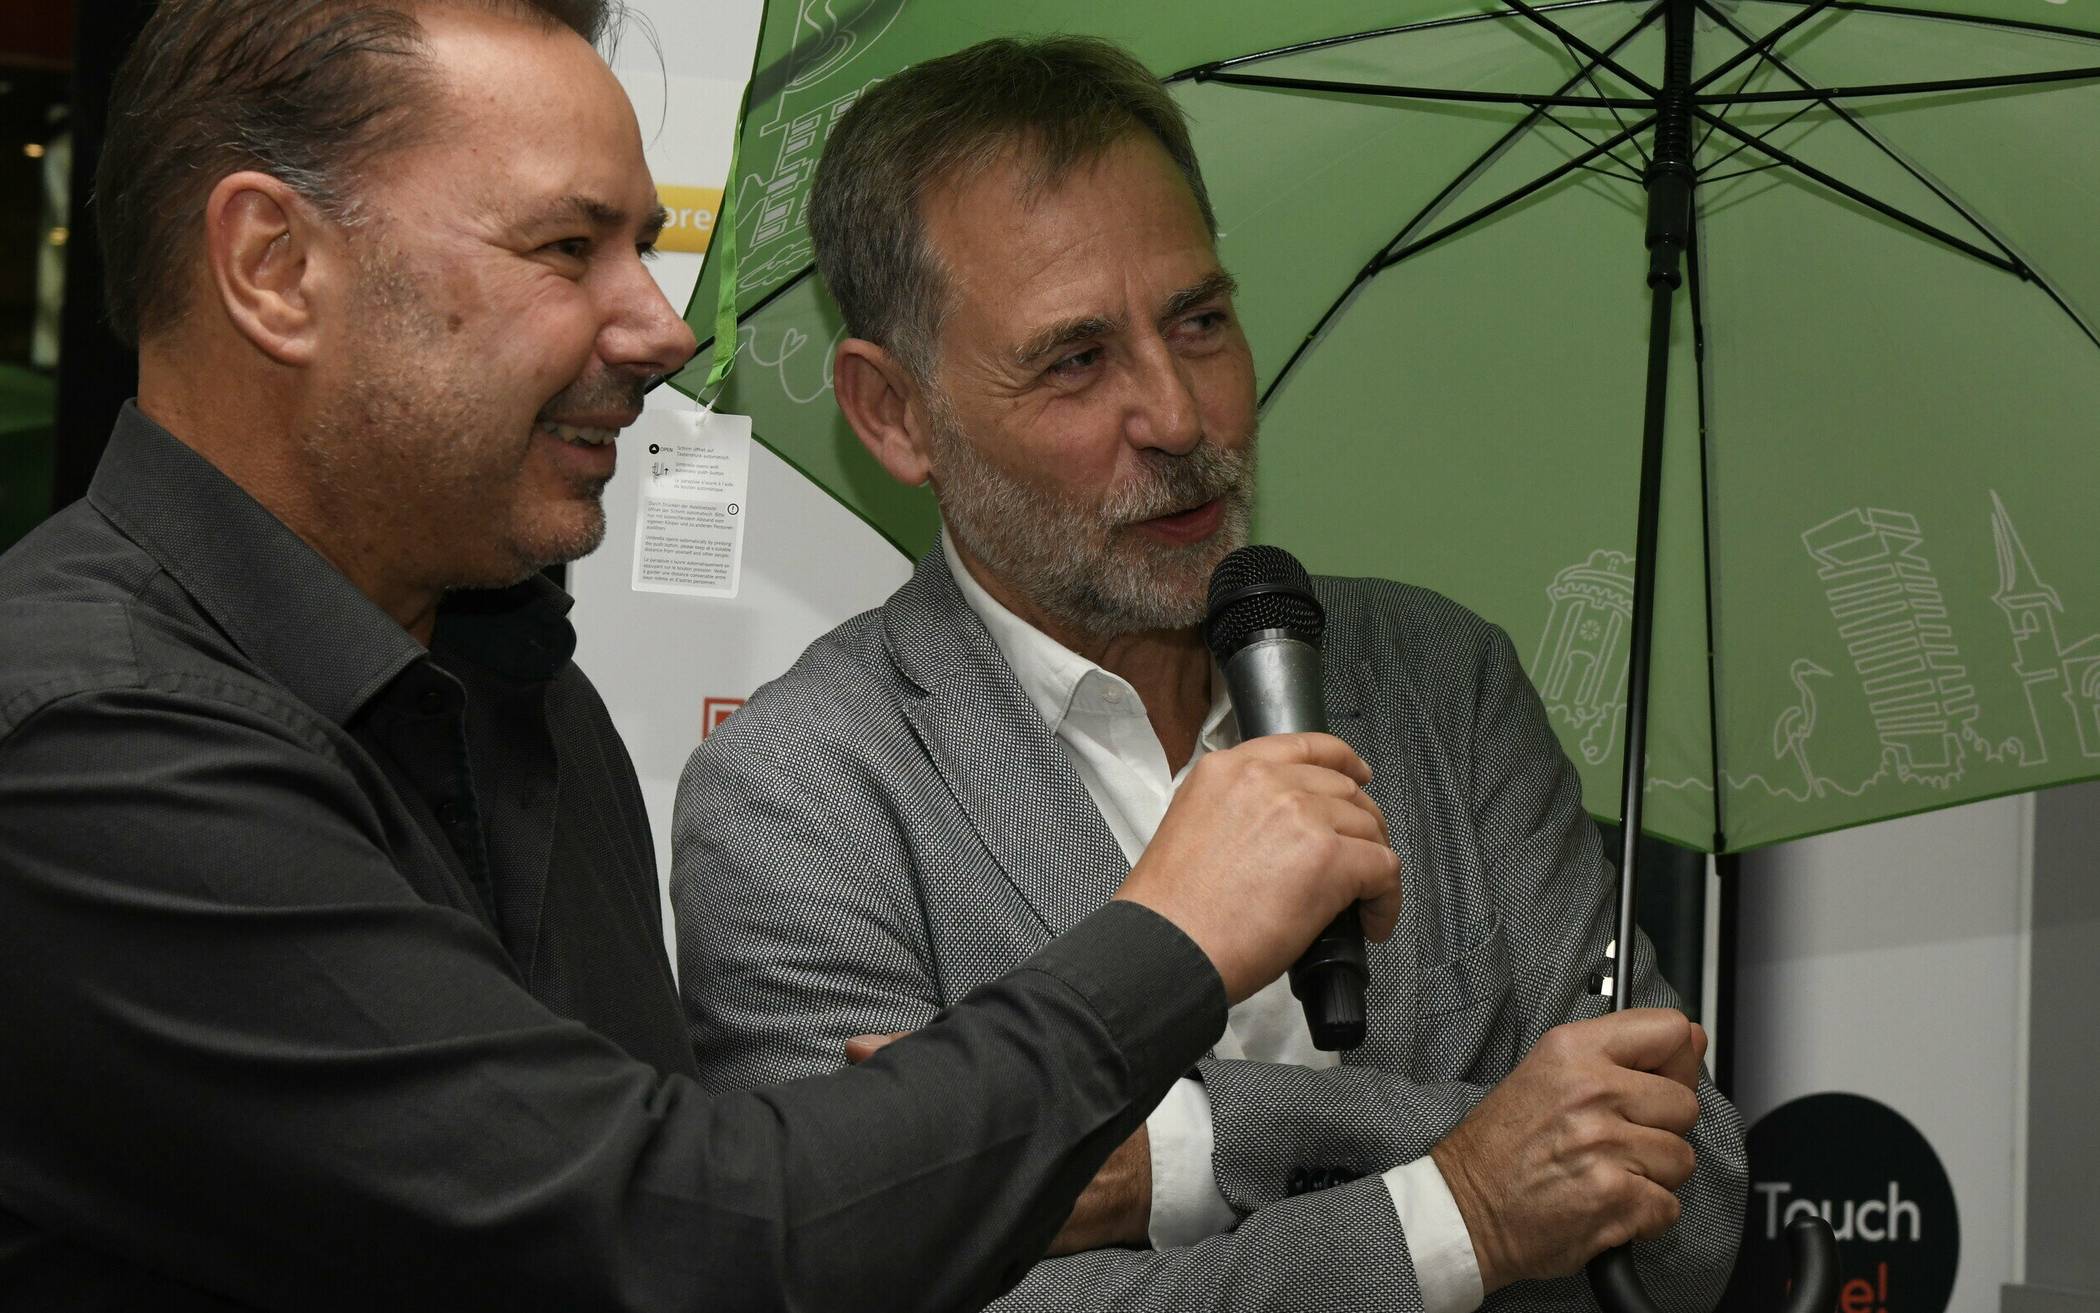 Stadtmarketing-Geschäftsführer Martin Bang  (re., mit Rundschau-Redaktionsleiter Roderich Trapp) stiftete mit Blick auf das Wetter spontan Regenschirme für die Teilnehmer, die beste Wuppertal-Werbung gemacht haben.